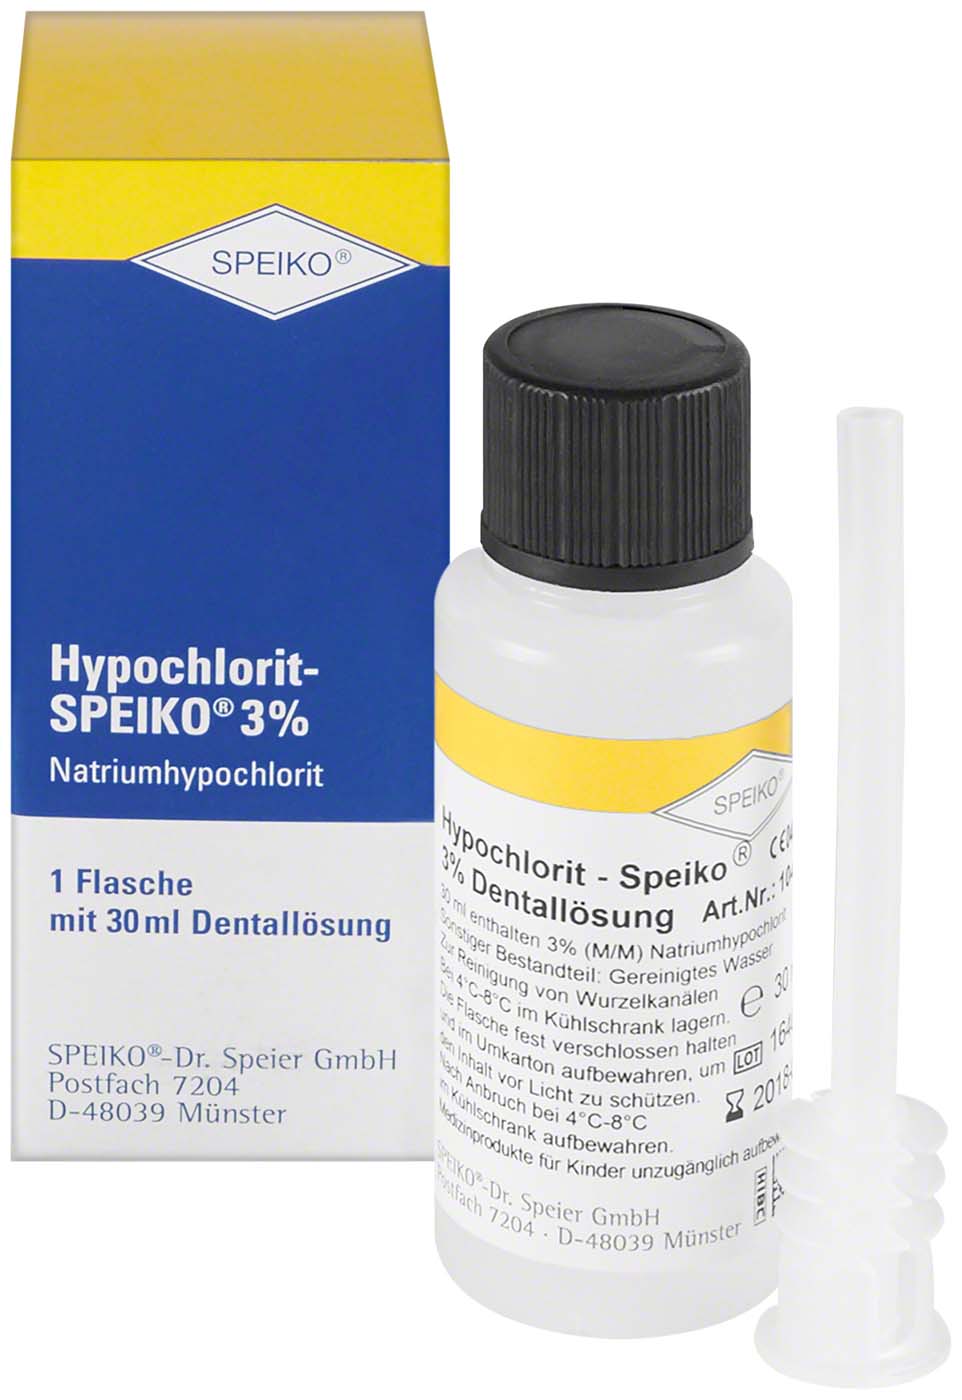 Hypochlorit-SPEIKO® 3 % SPEIKO